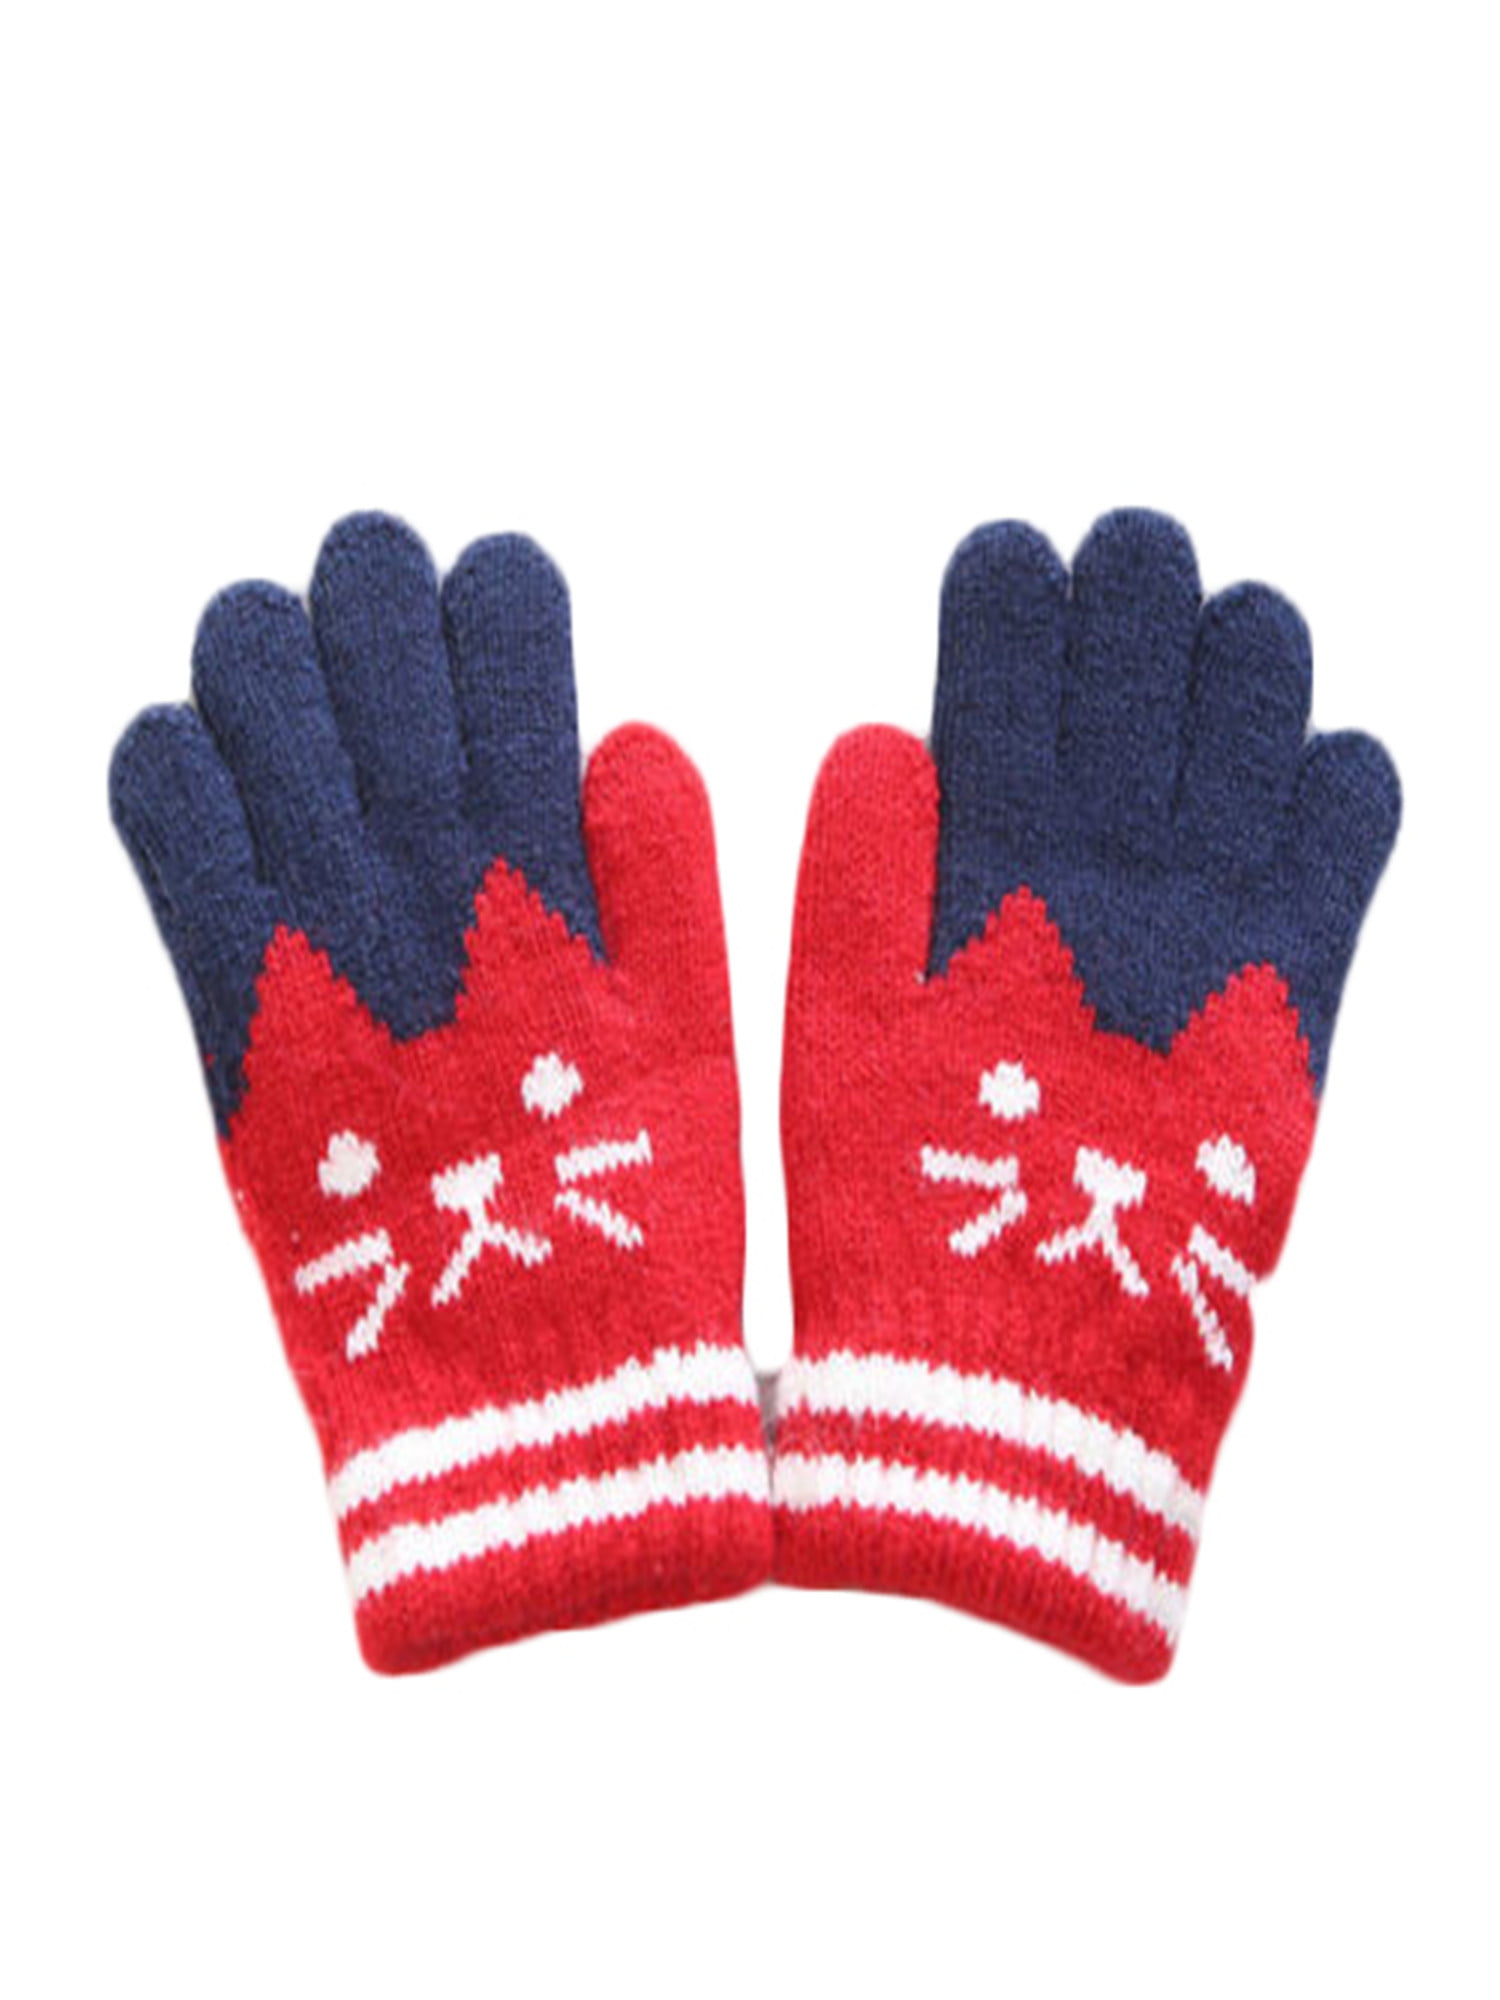 Goretex Mittens Kids Red 5-6 Years Boy DressInn Boys Accessories Gloves 